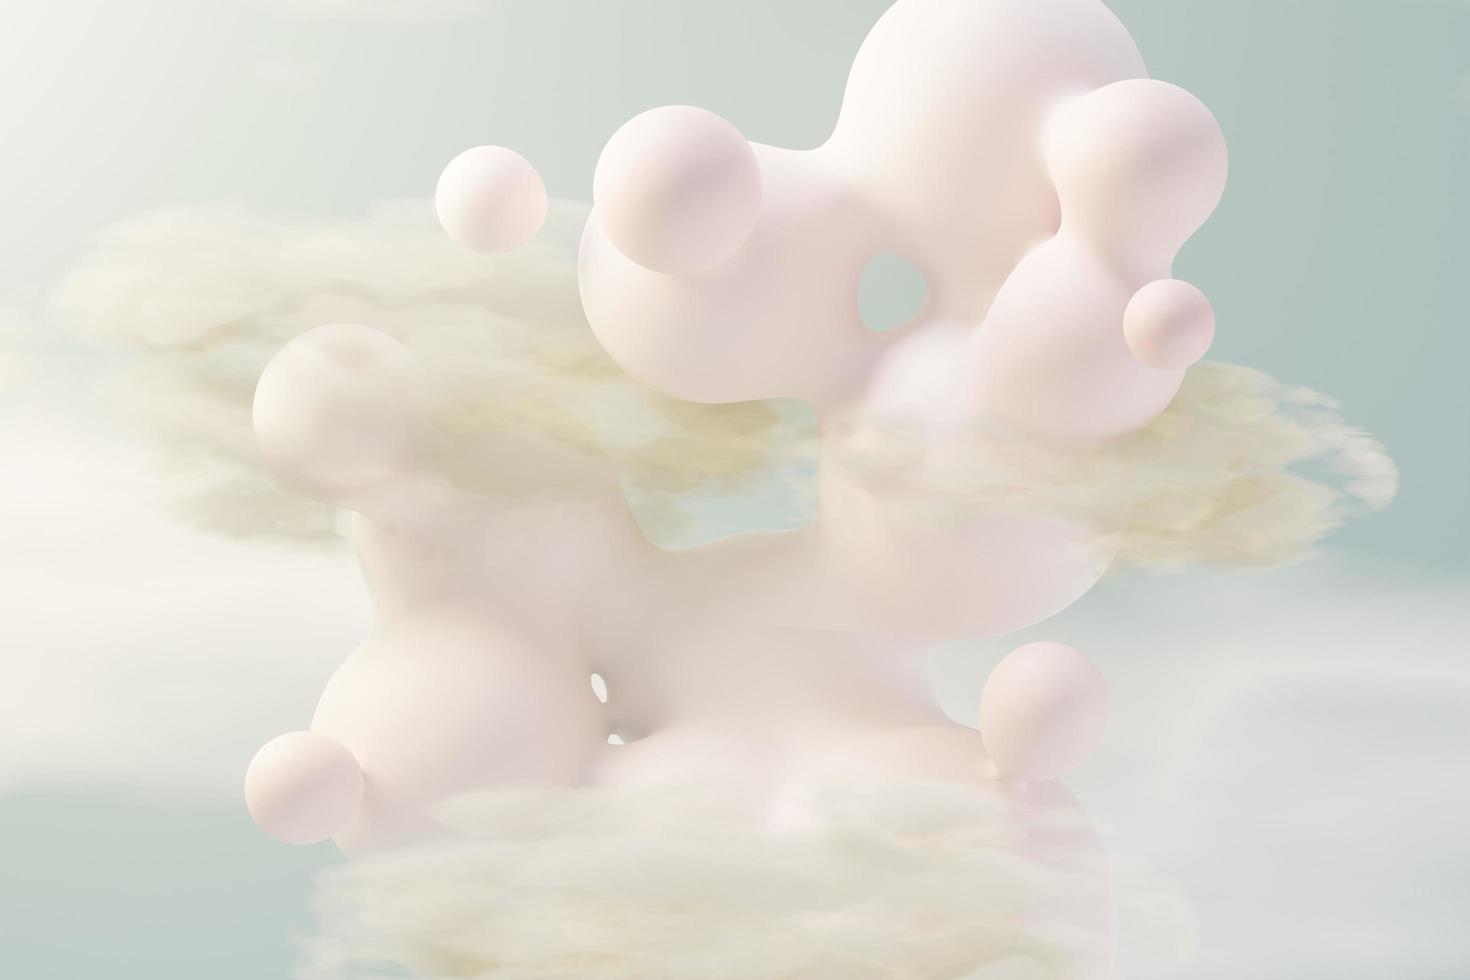 3D-Darstellung von Pastellkugeln, Seifenblasen, Blobs, die mit flauschigen Wolken und Ozean in der Luft schweben. Romantik Land der Traumszene. natürlicher abstrakter verträumter himmel. foto